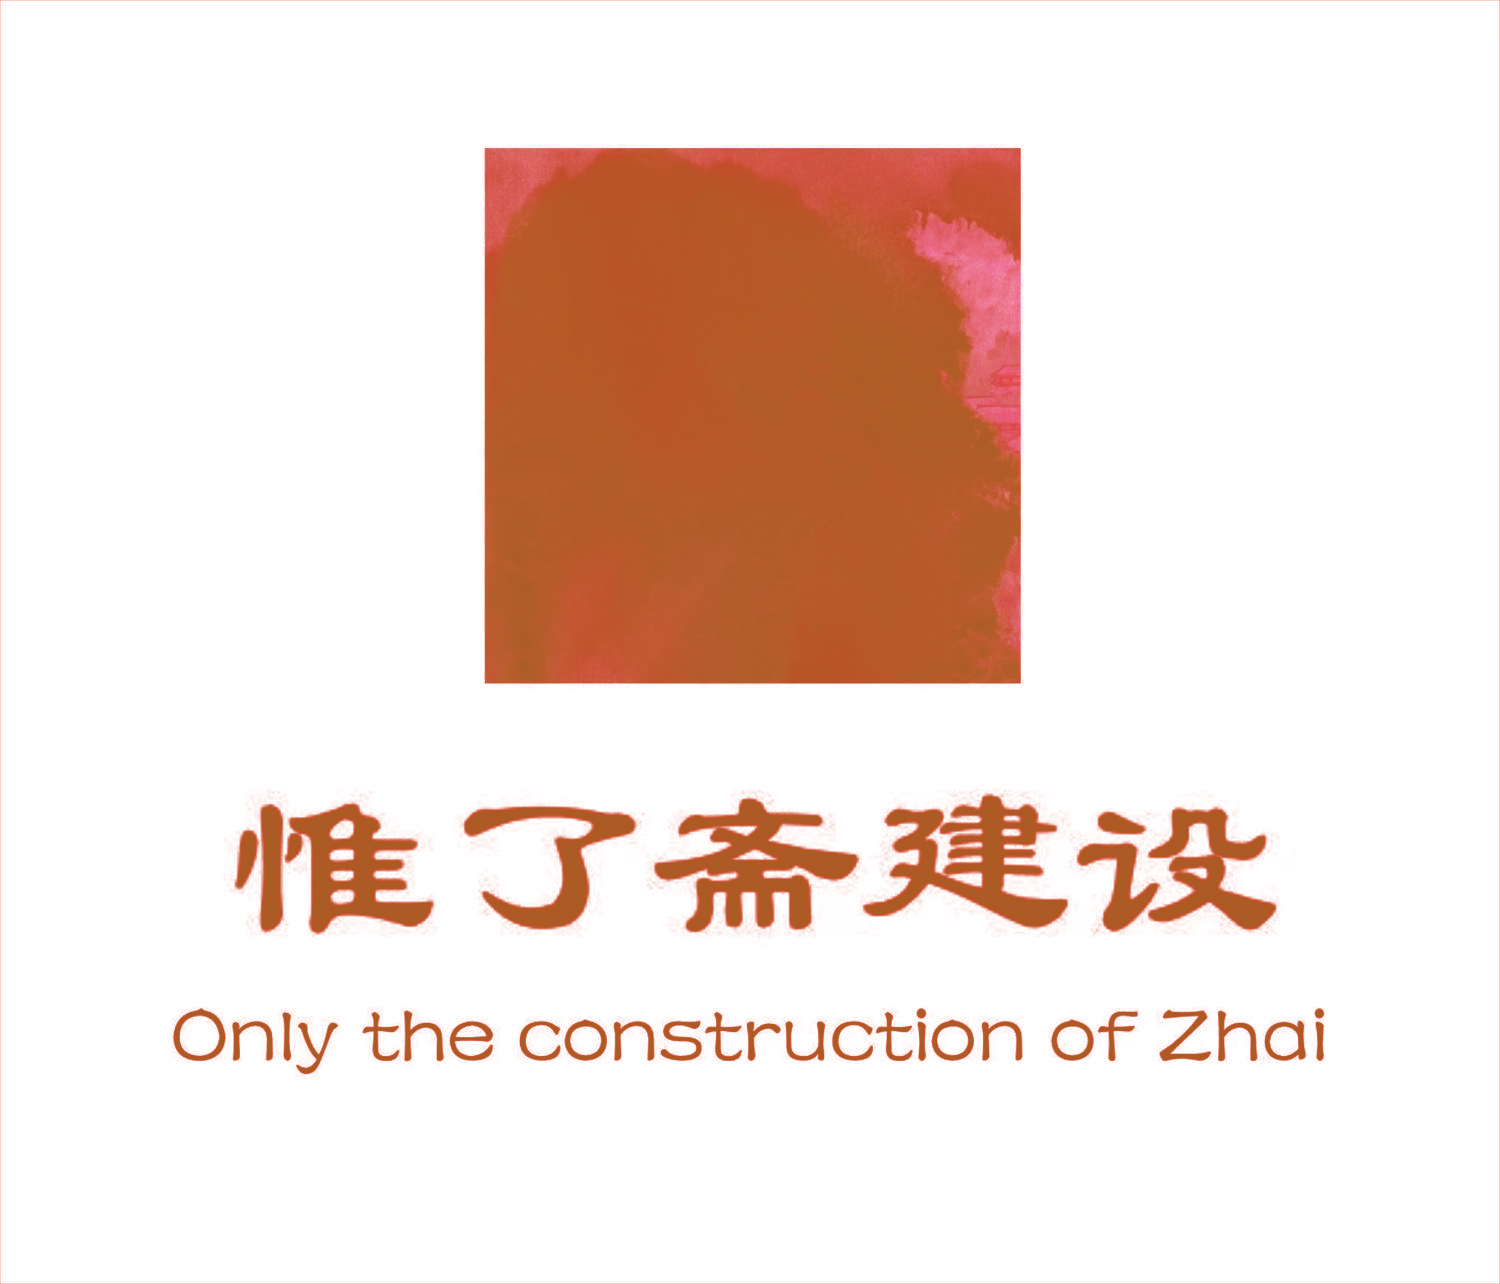 惟了斋建设Only the construction of Zhai